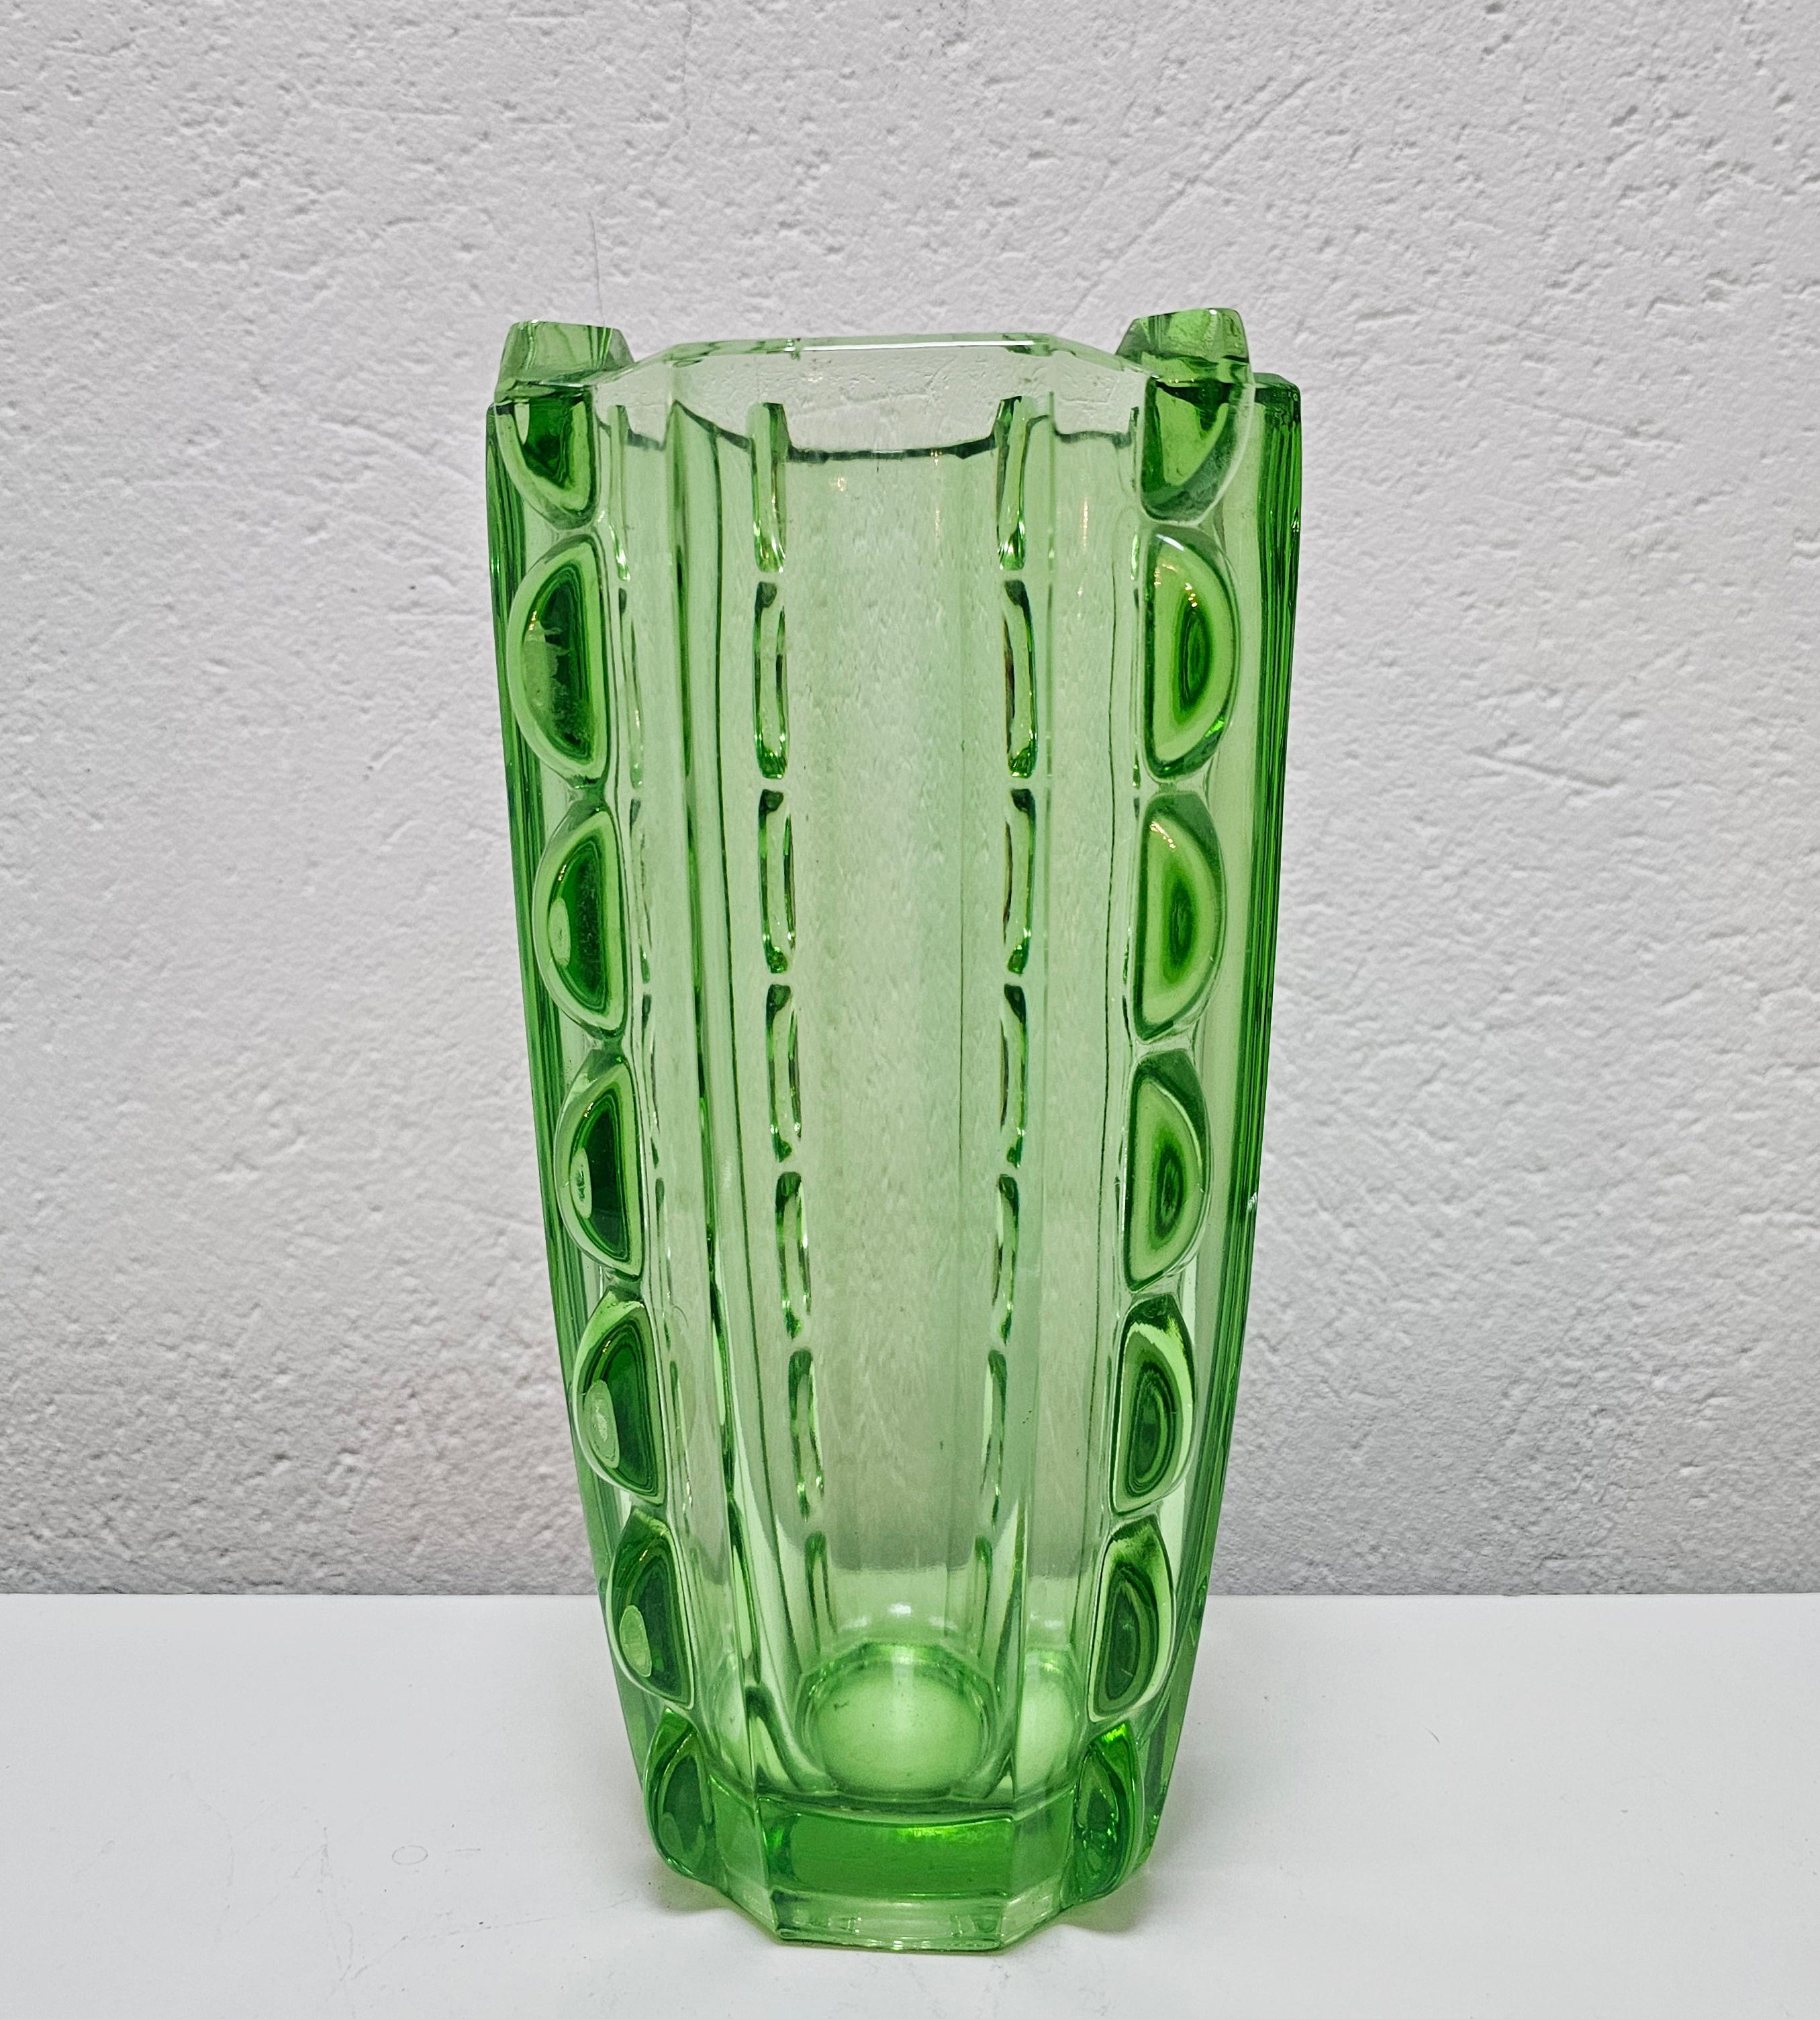 Vous trouverez dans cette annonce un magnifique vase Art déco en verre vert. Elle est réalisée en verre vert clair et présente des formes géométriques et des ornements intéressants, inspirés par les maîtres verriers italiens. Fabriqué en